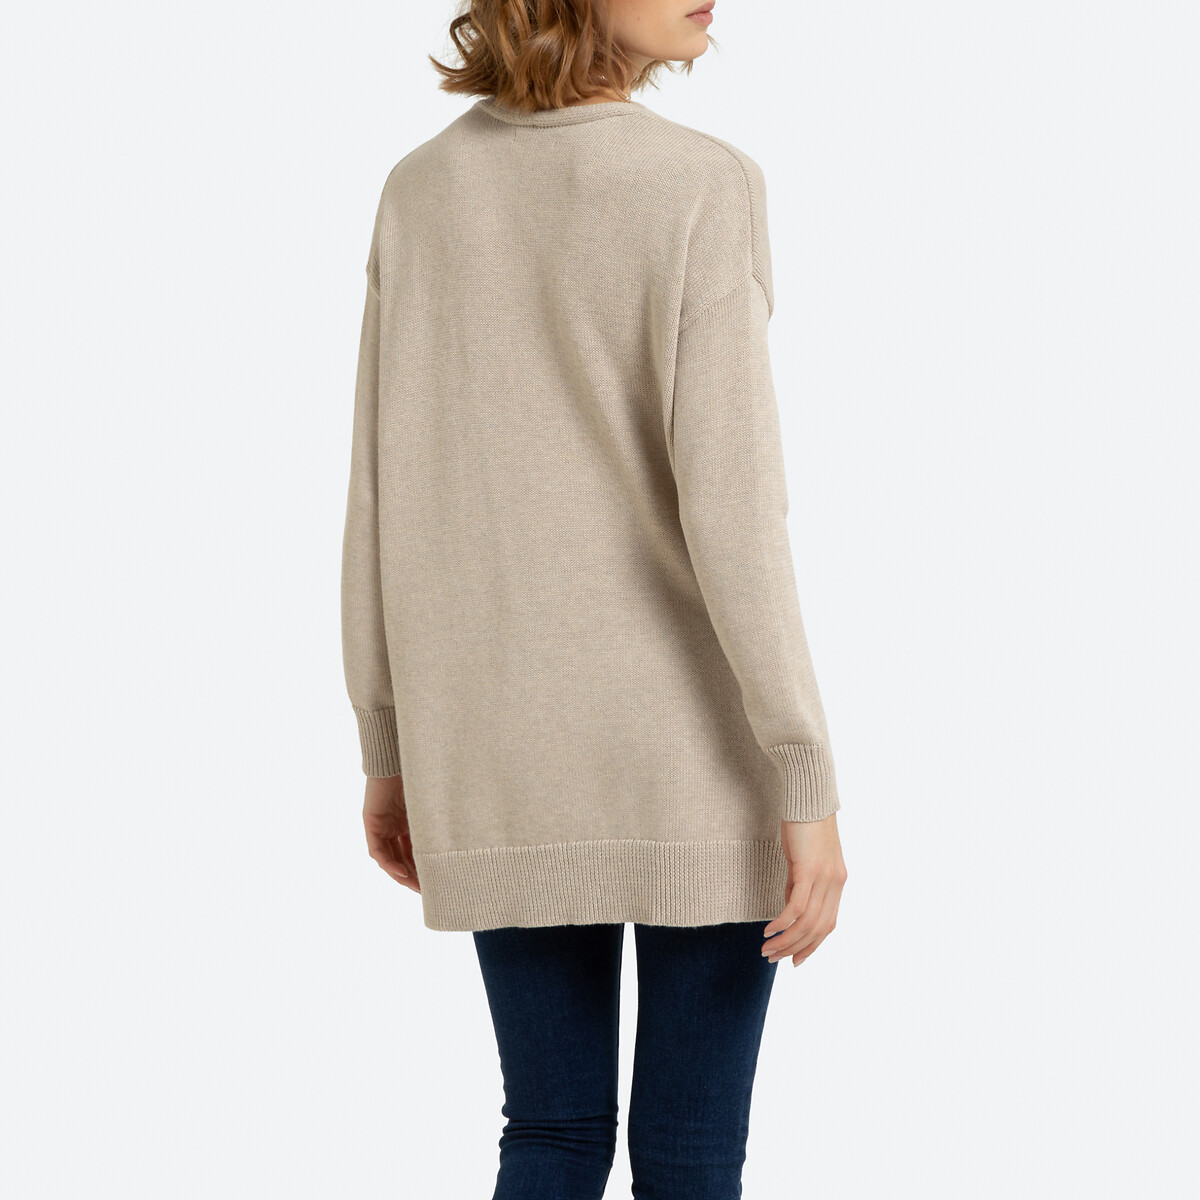 Пуловер La Redoute С V-образным вырезом на пуговицах сбоку XL бежевый, размер XL - фото 4